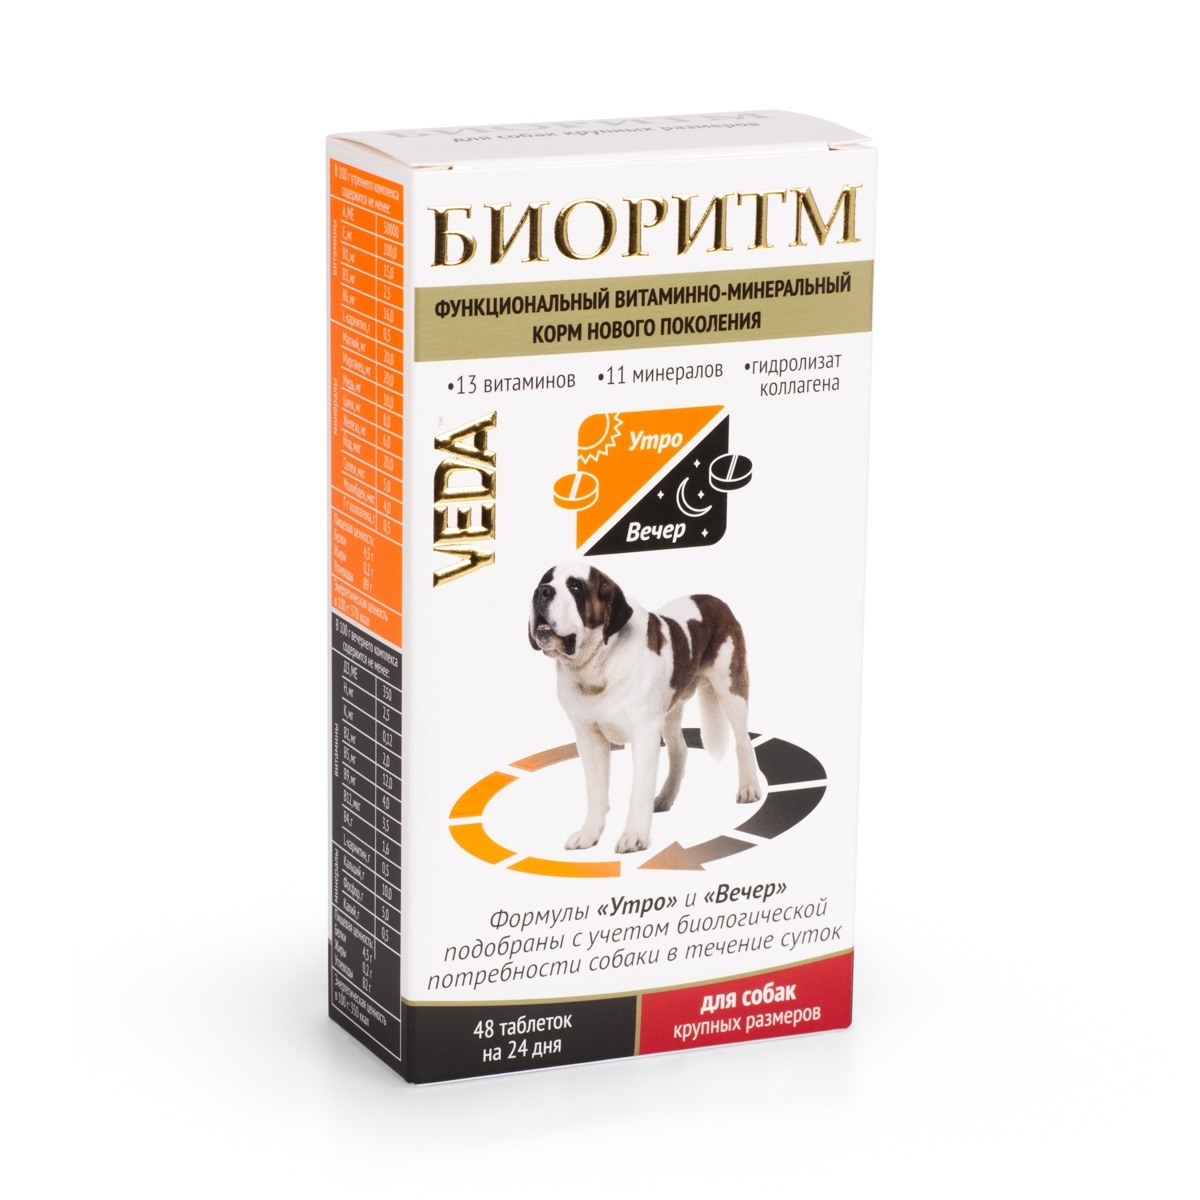 Веда Веда биоритм витамины для собак крупных пород (20 г)